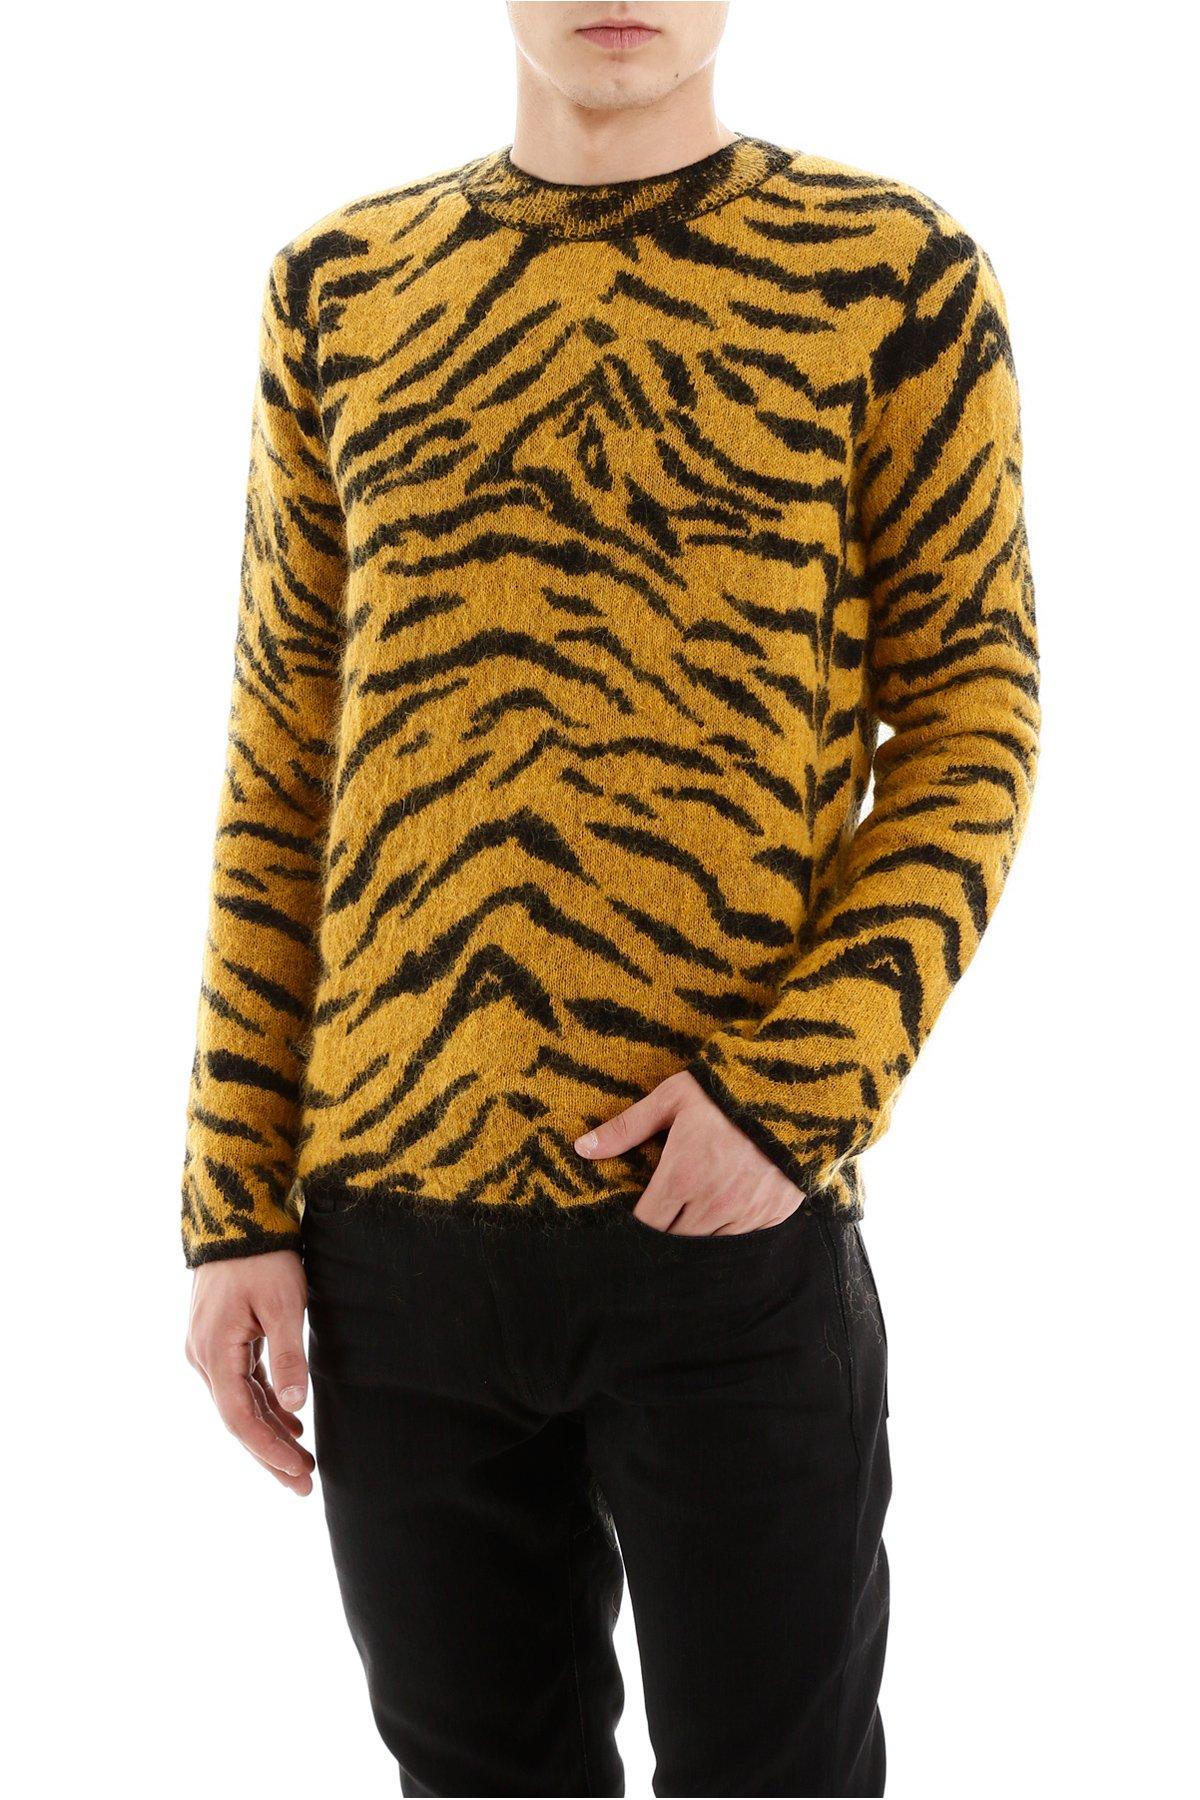 Saint Laurent Wool Zebra Pullover for Men - Lyst